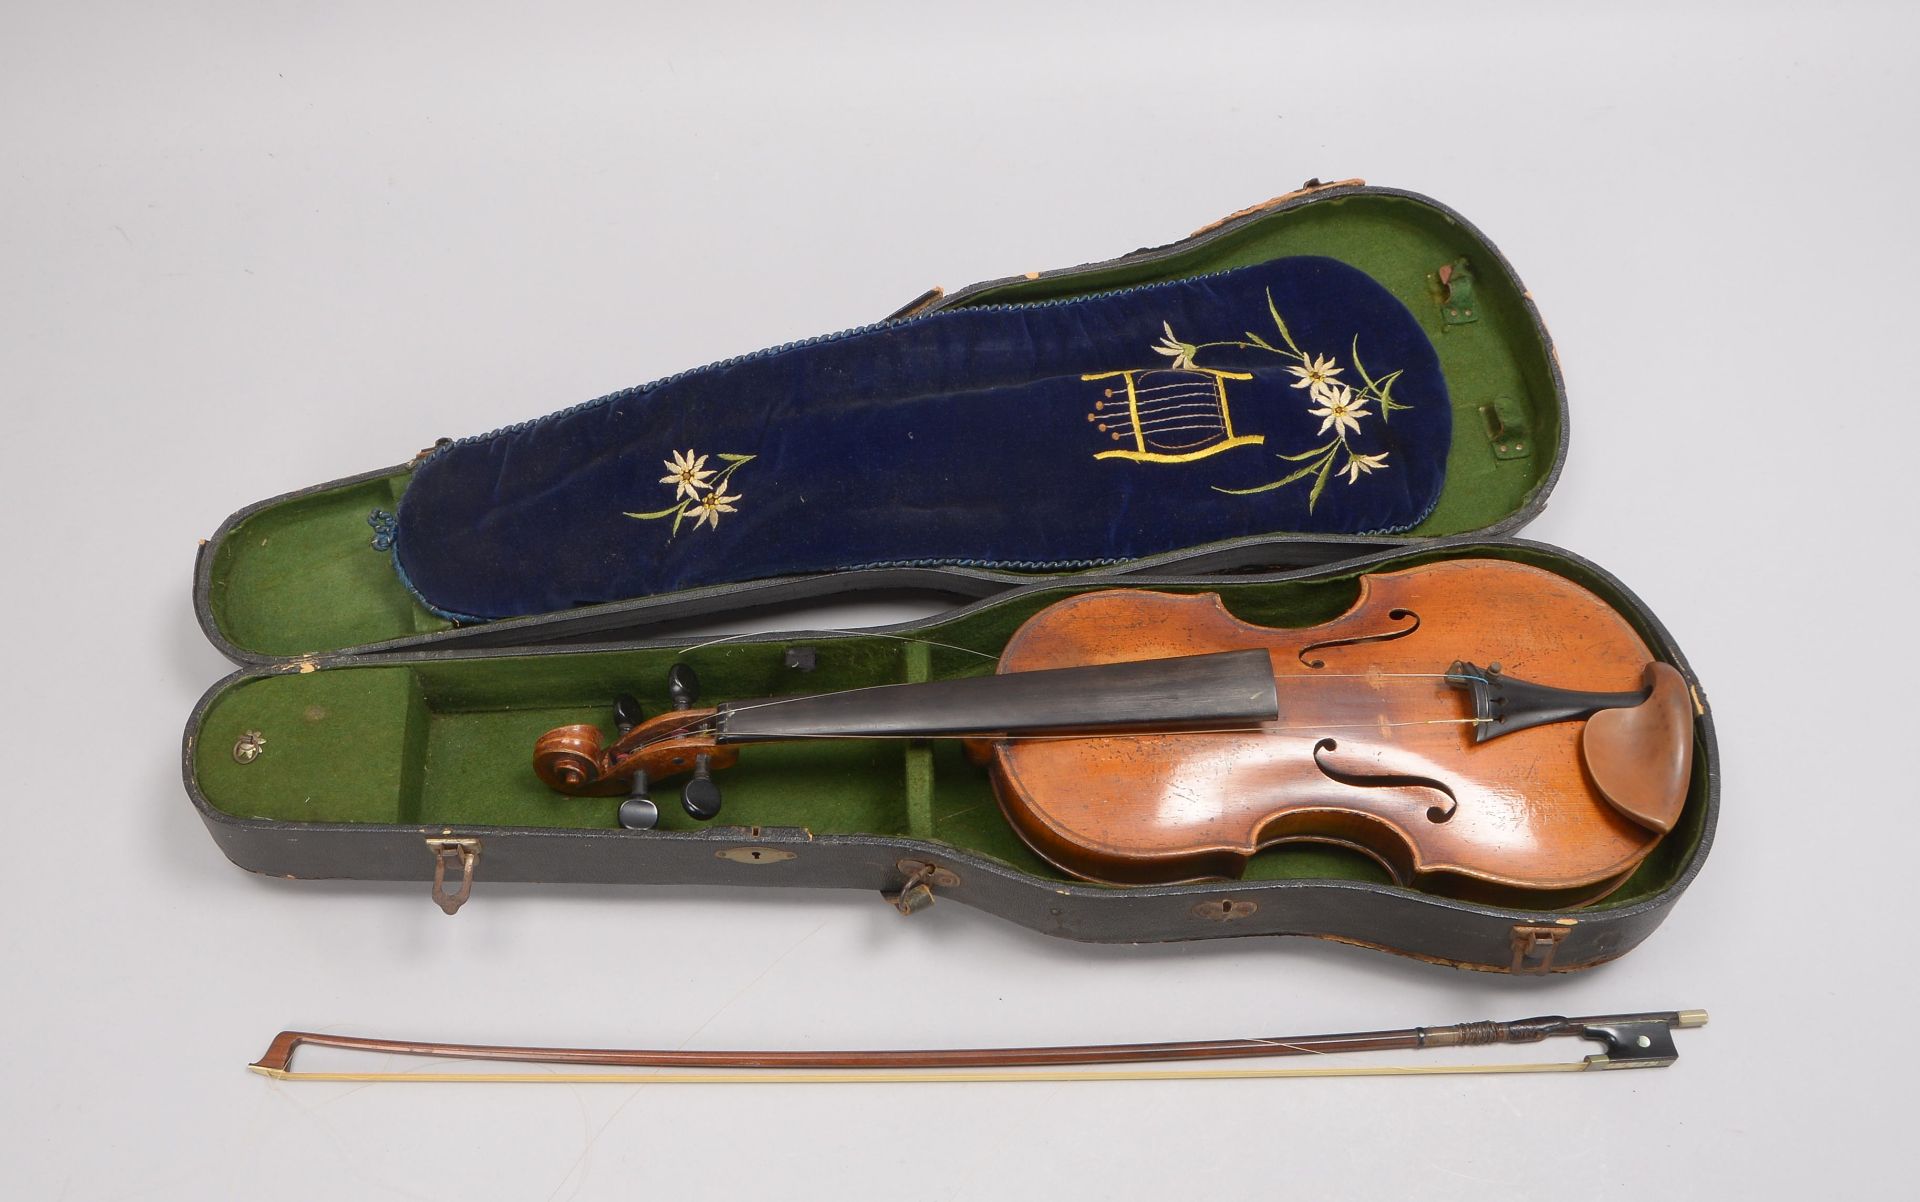 Alte Geige (Innenetikettikettierung unleserlich), mit Bogen, im Koffer; Länge 60 cm - Bild 2 aus 2